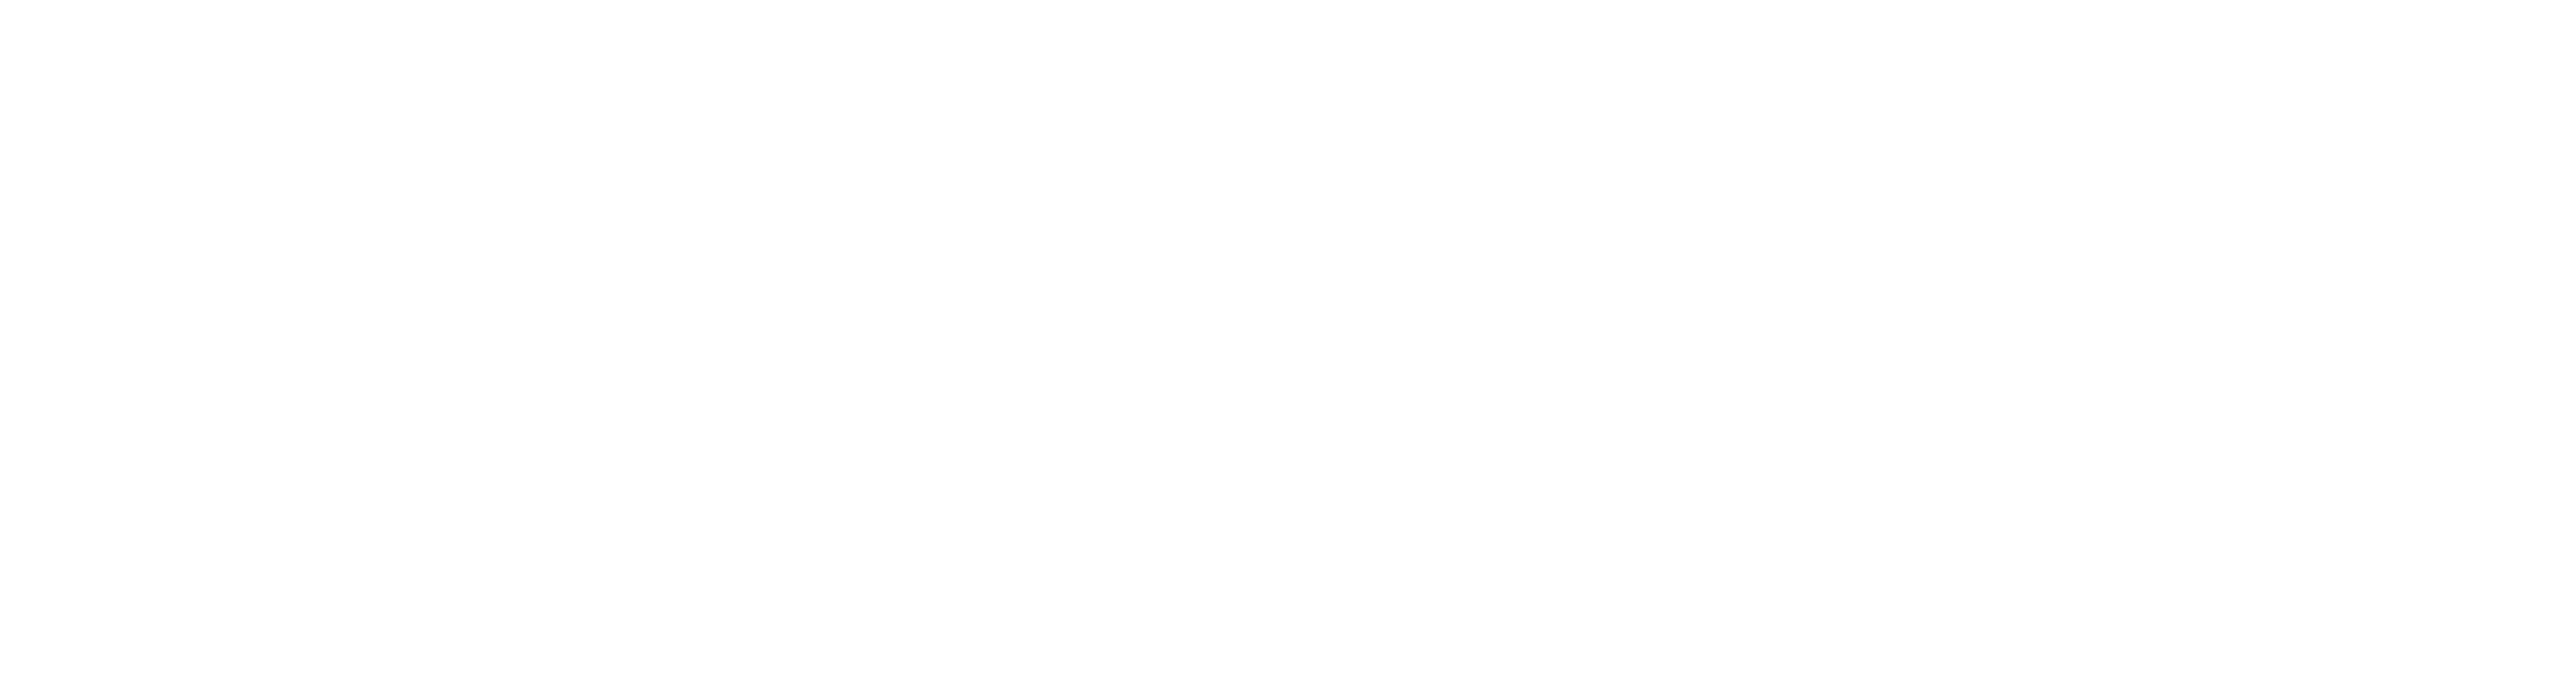 Washtenaw community college logo